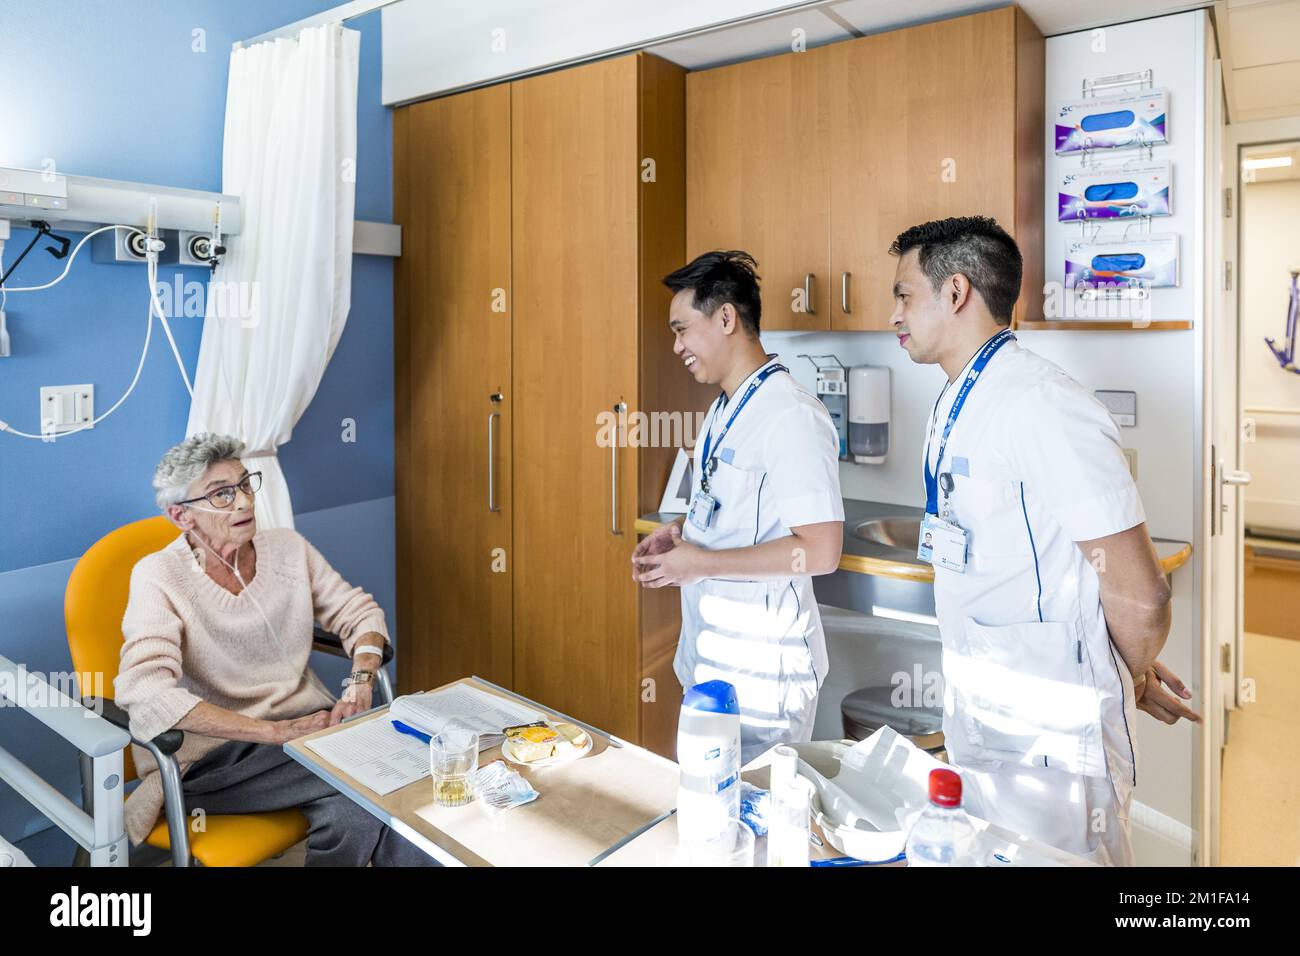 HEERLEN - gli infermieri filippini visitano i reparti dell'ospedale  Zuyderland dove vanno a lavorare. Per ridurre la carenza di personale  sanitario, gli ospedali reclutano operatori sanitari dall'estero. ANP  MARCEL VAN HOORN olanda